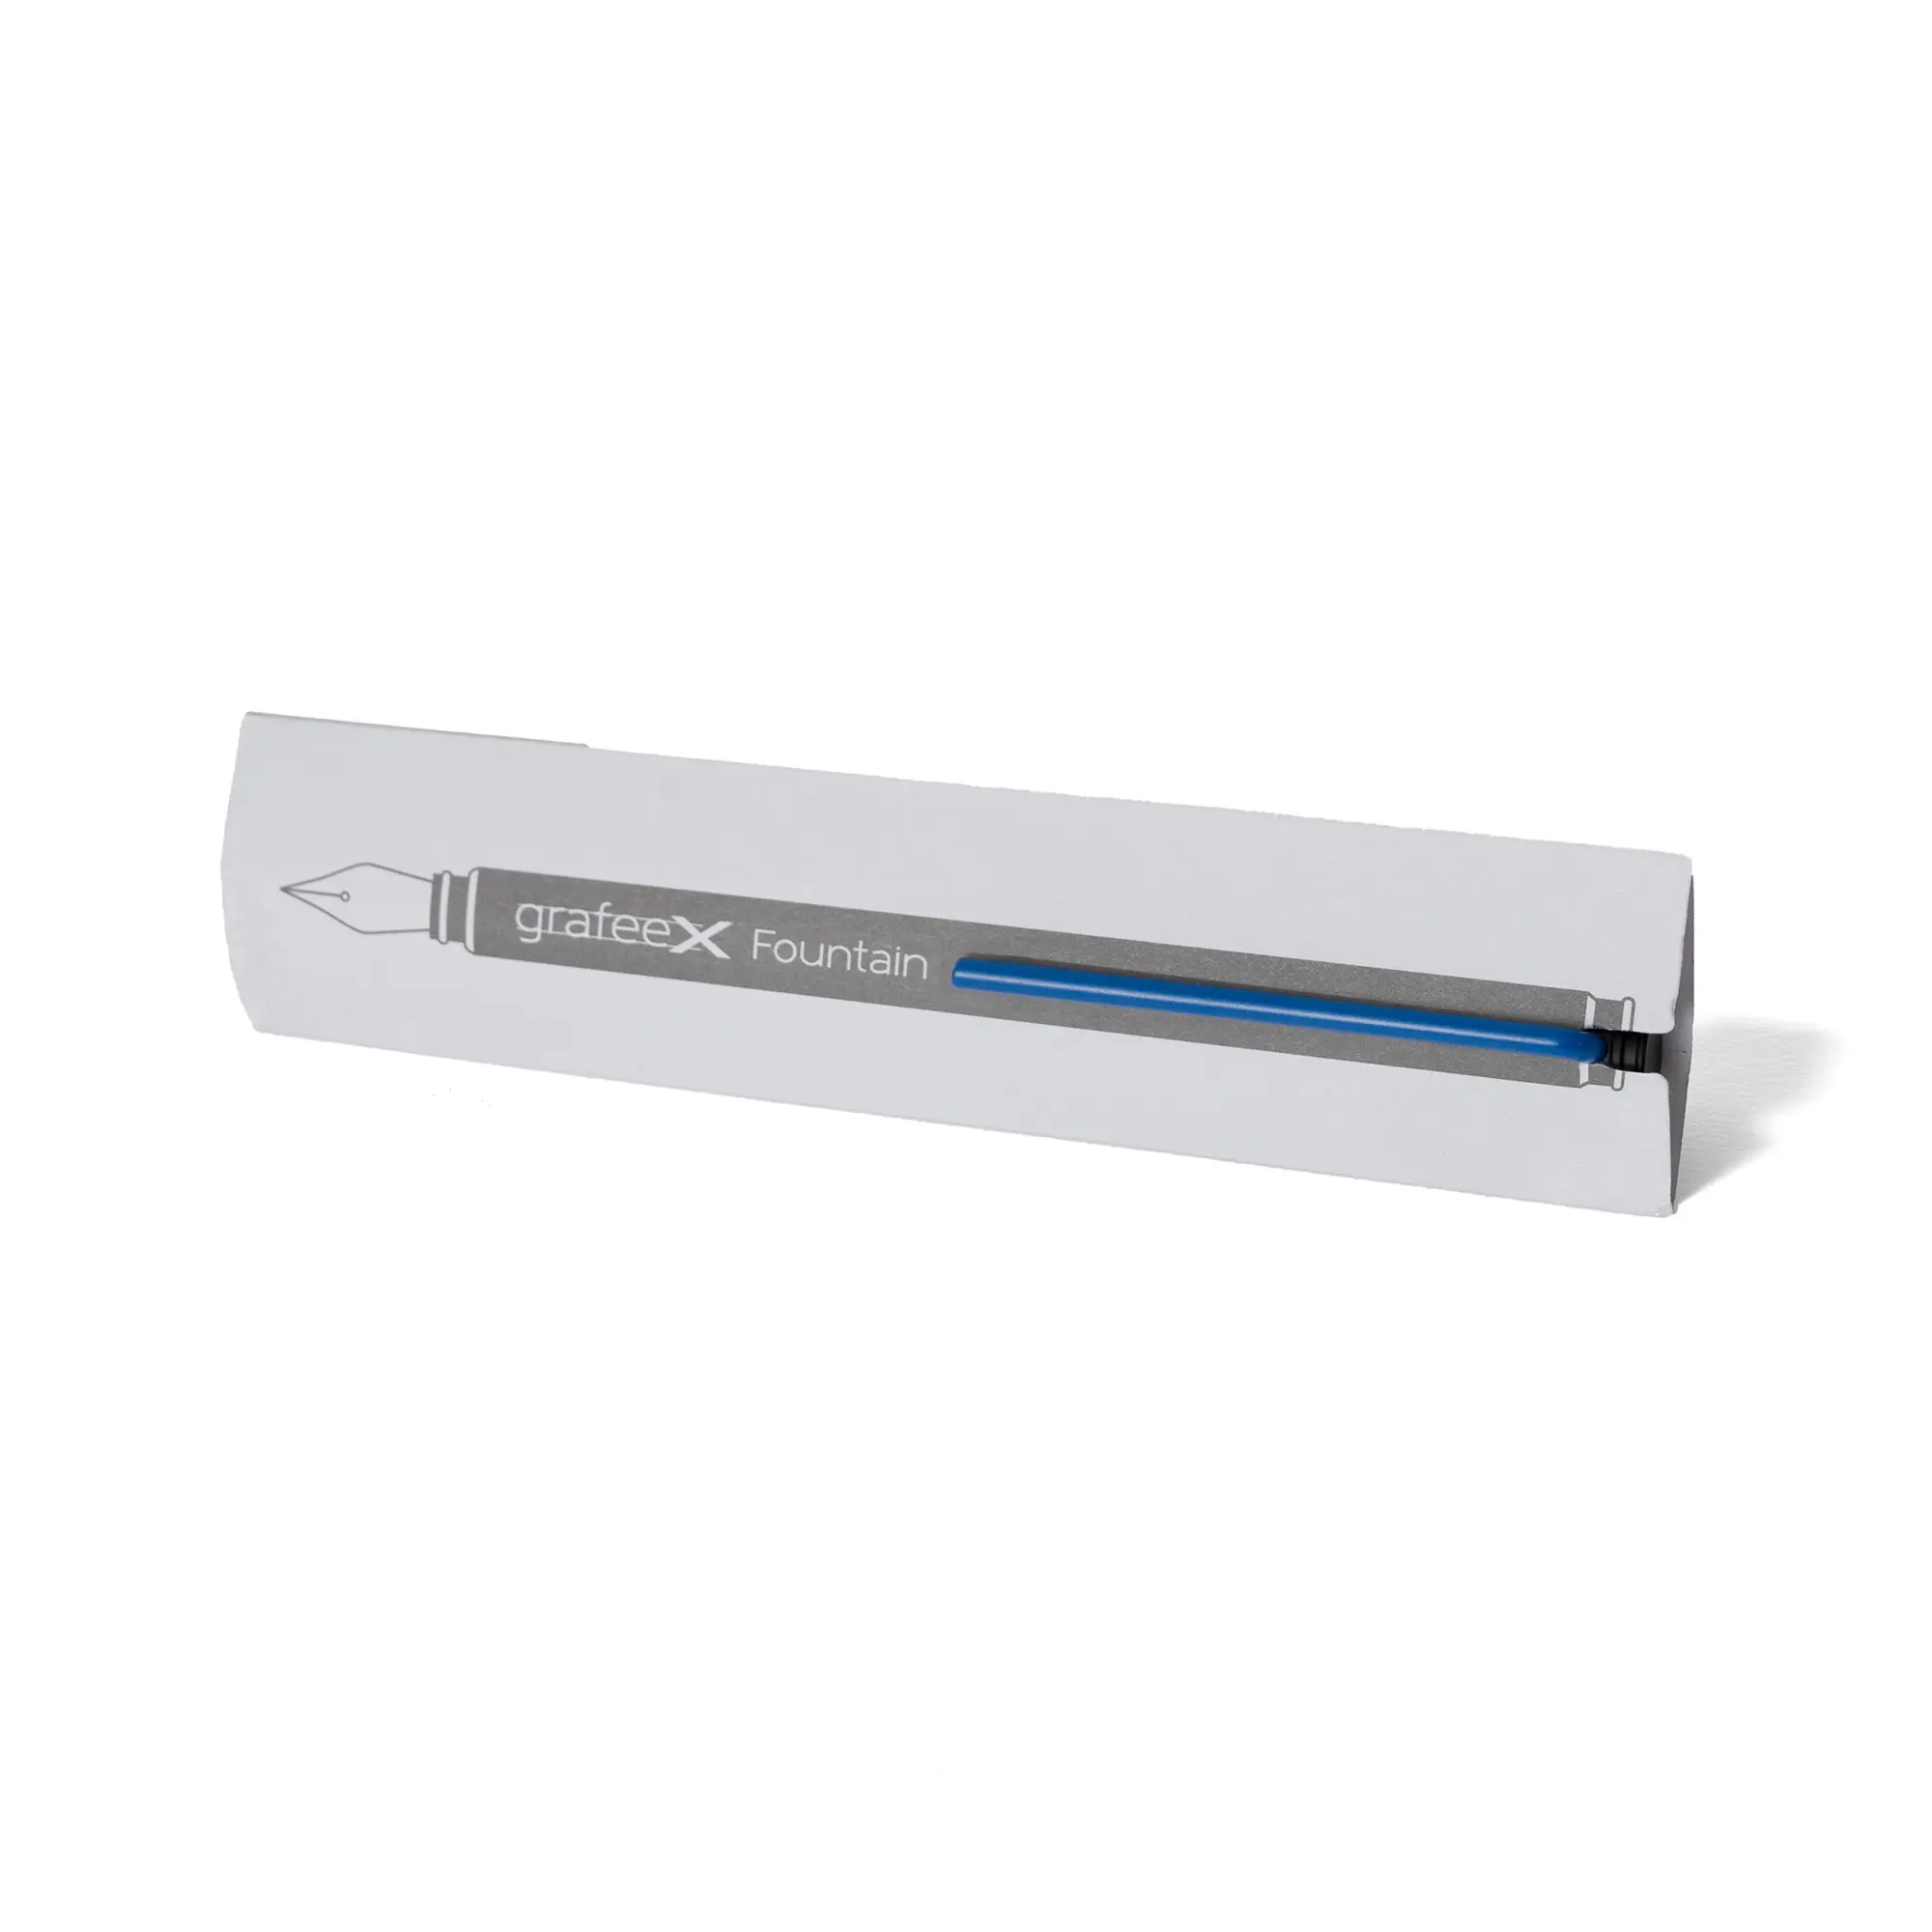 Alüminyum Grafeex dolma kalem tasarım coublue mavi klip Nib ile İtalya'da ince ve özel Logo promosyon hediye için Ideal